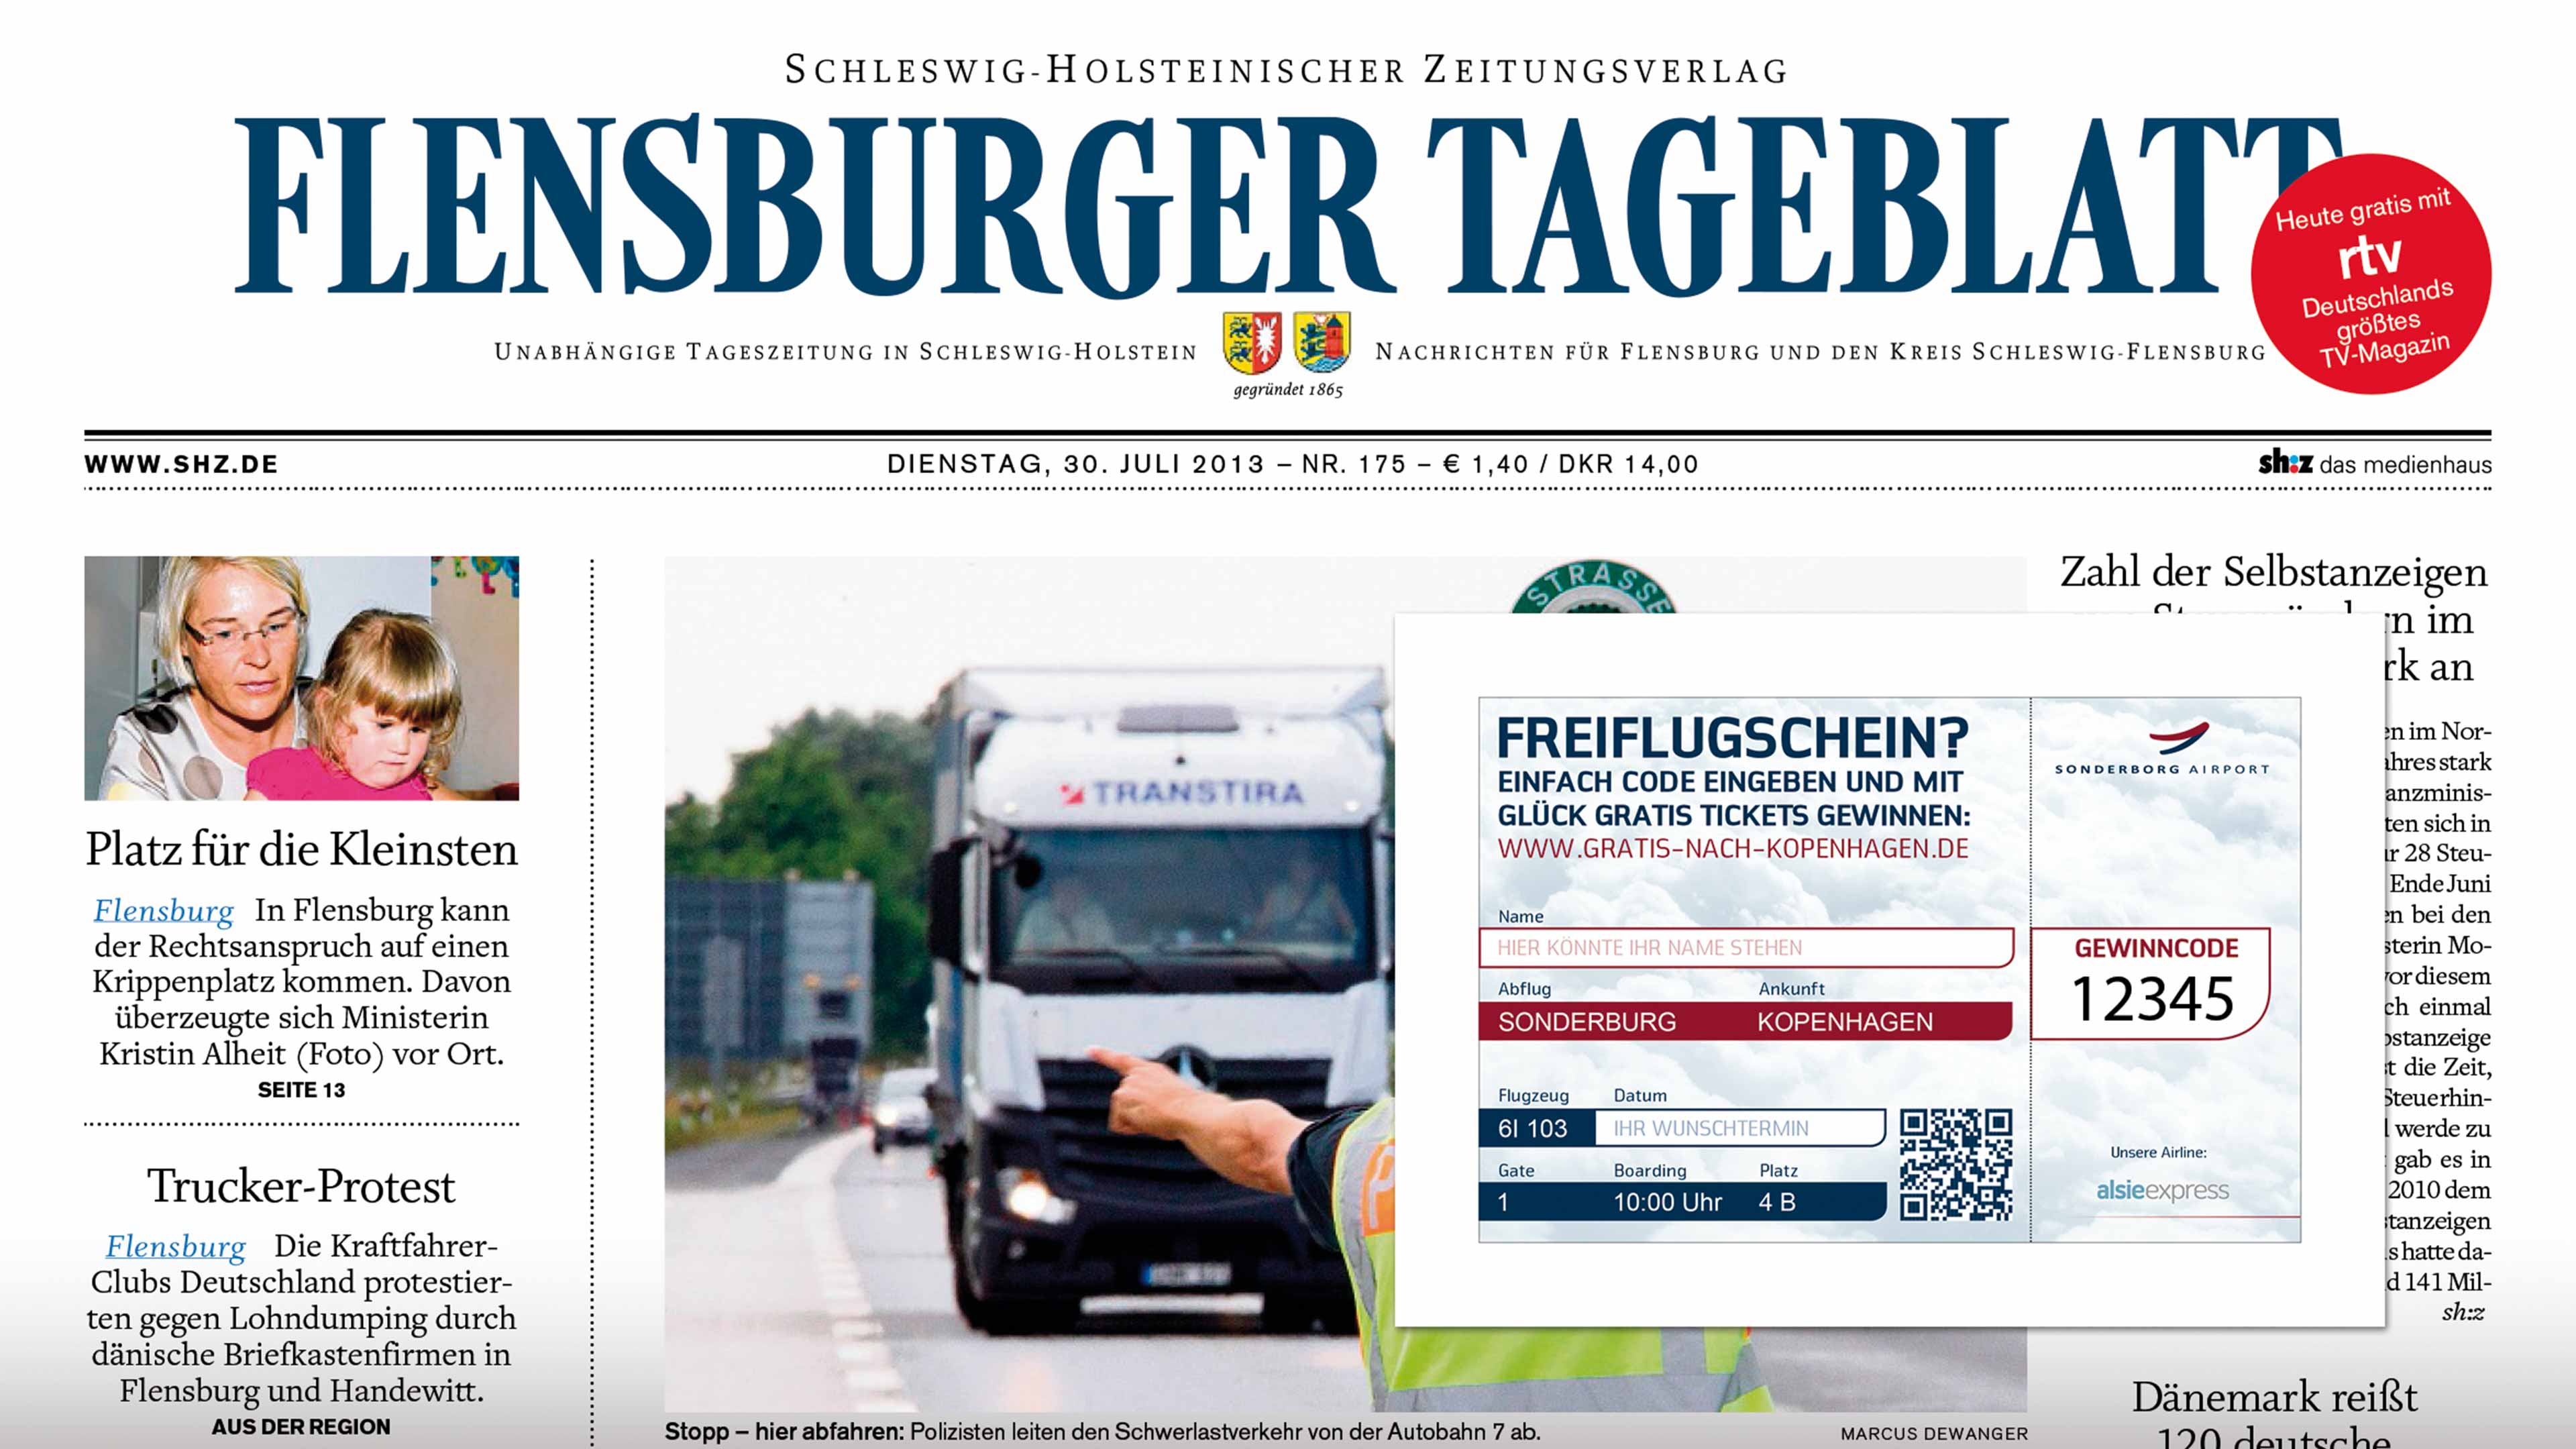 Aufkleberanzeige "Freiflugschein für Airport Sonderburg" auf Flensburg Tageblatt